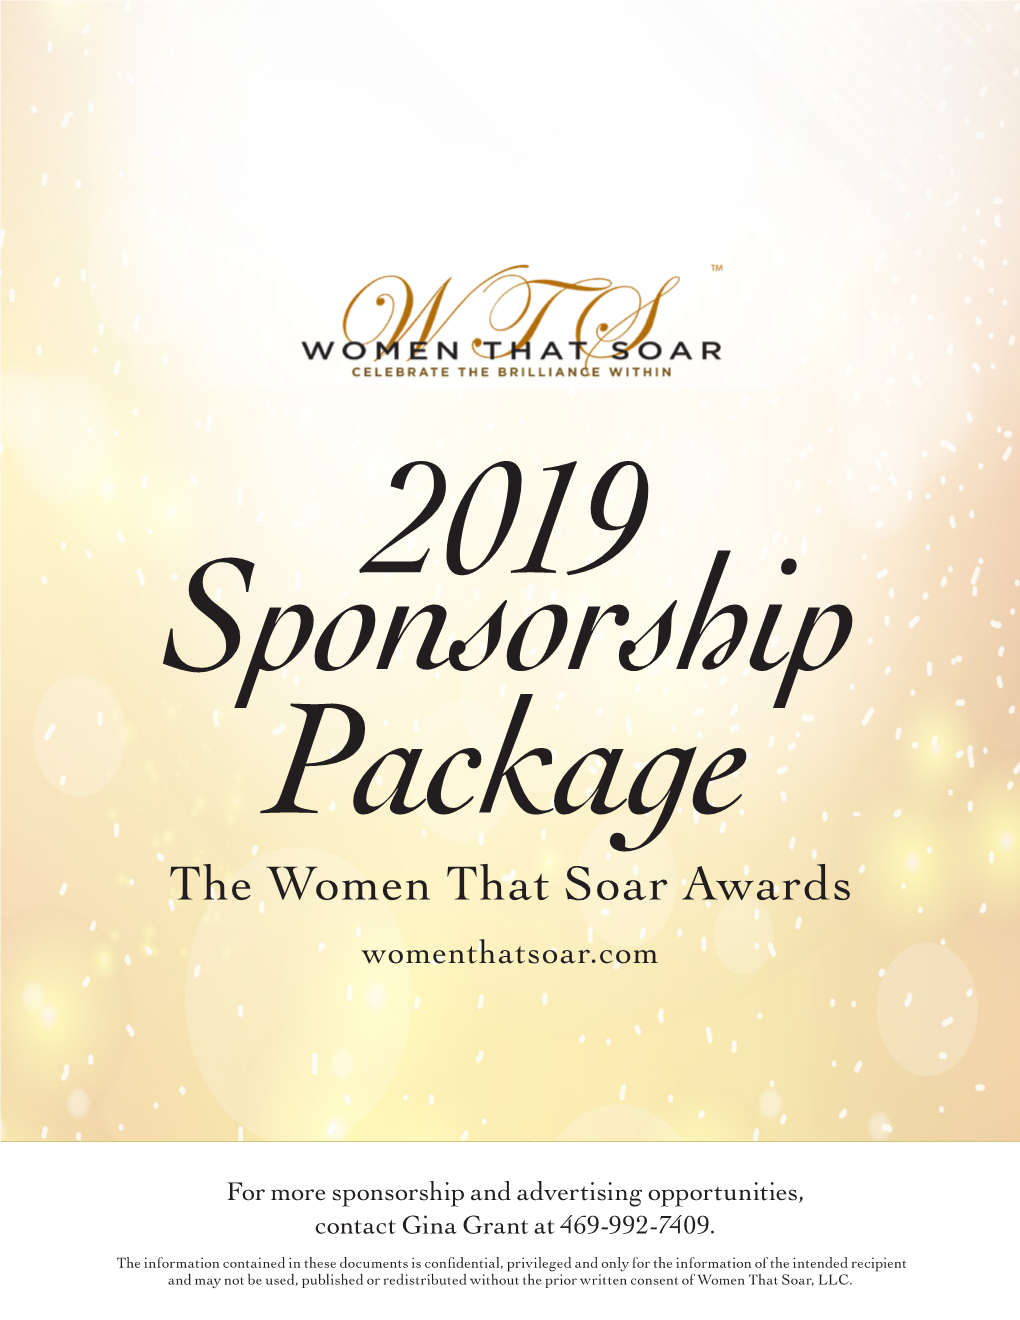 2019 Sponsorship Package the Women That Soar Awards Womenthatsoar.Com